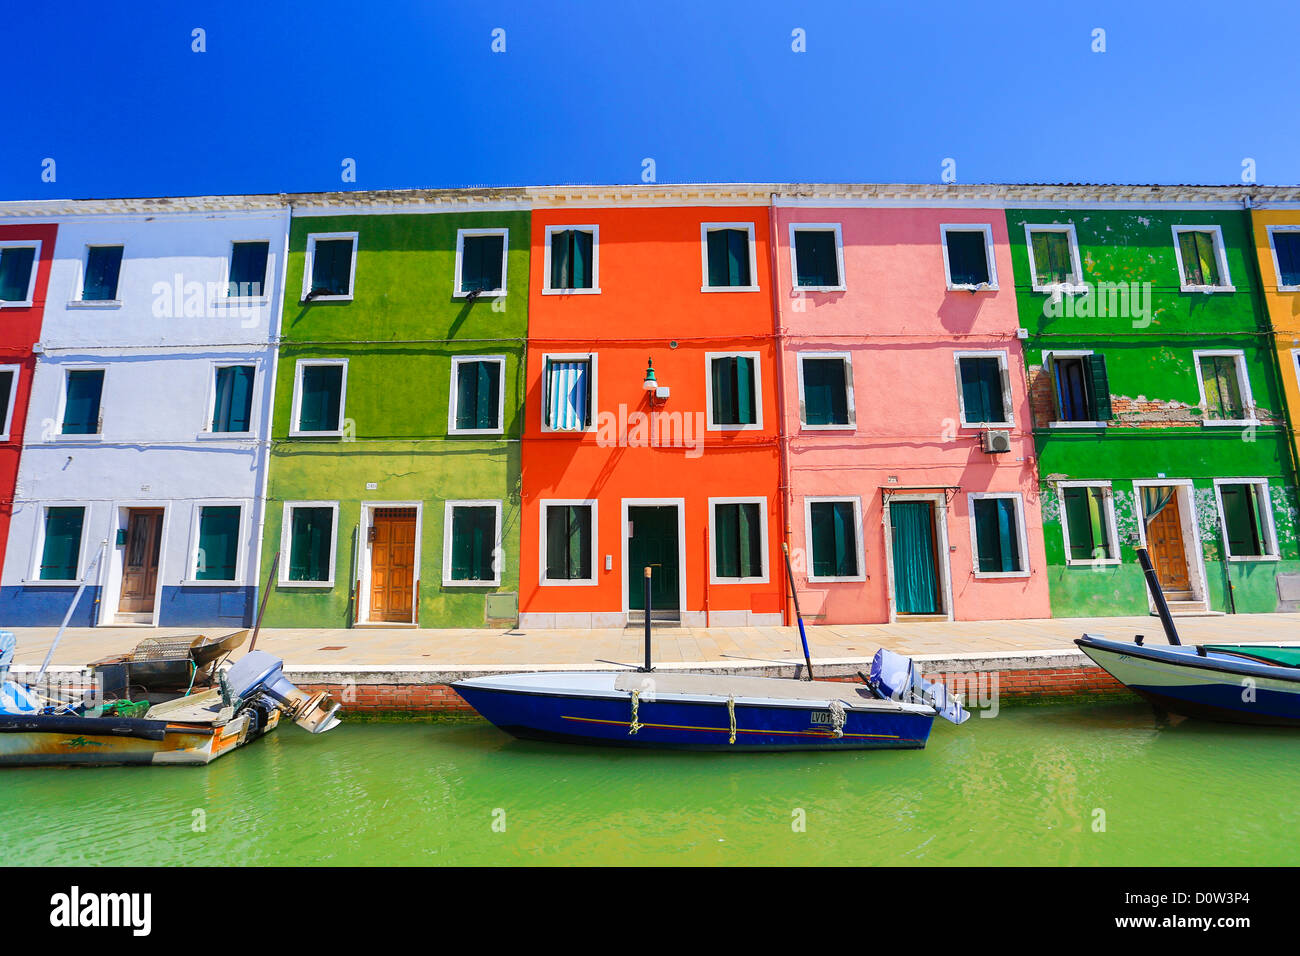 L'Italia, Europa, viaggi, Venezia e Burano architettura, barche, canal, colorati, colori, turismo, case Foto Stock